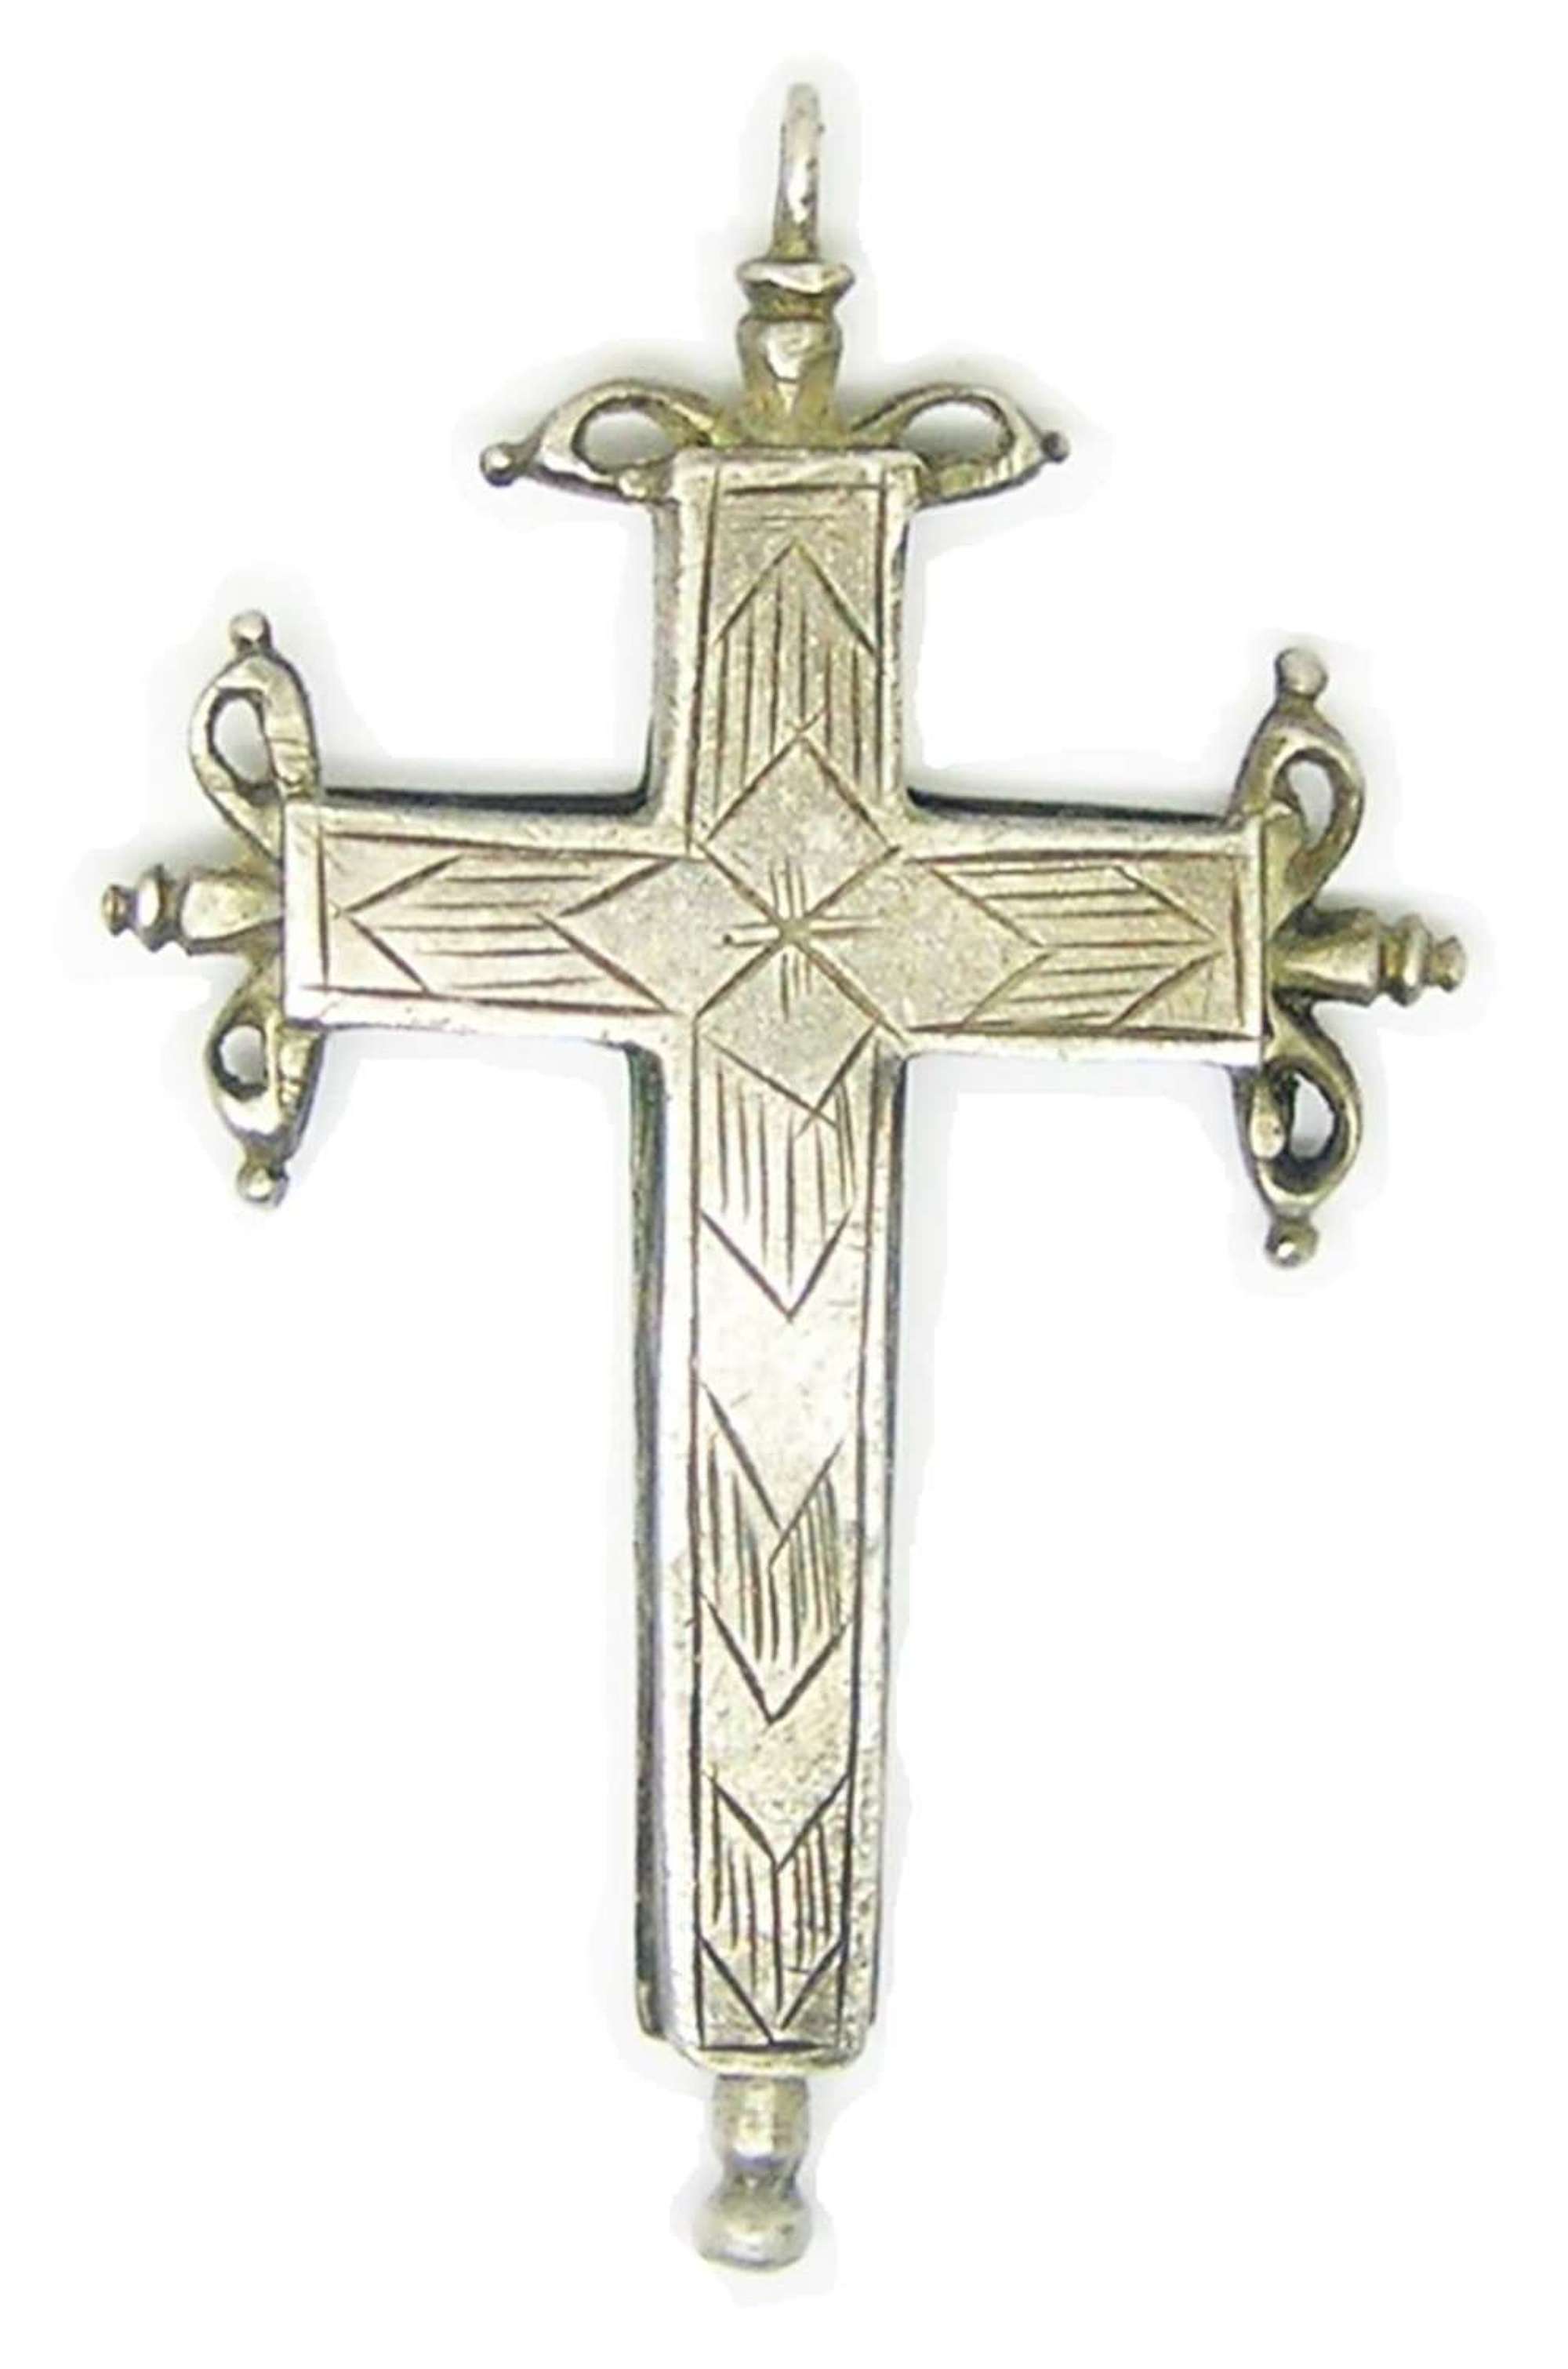 Renaissance silver reliquary cross pendant